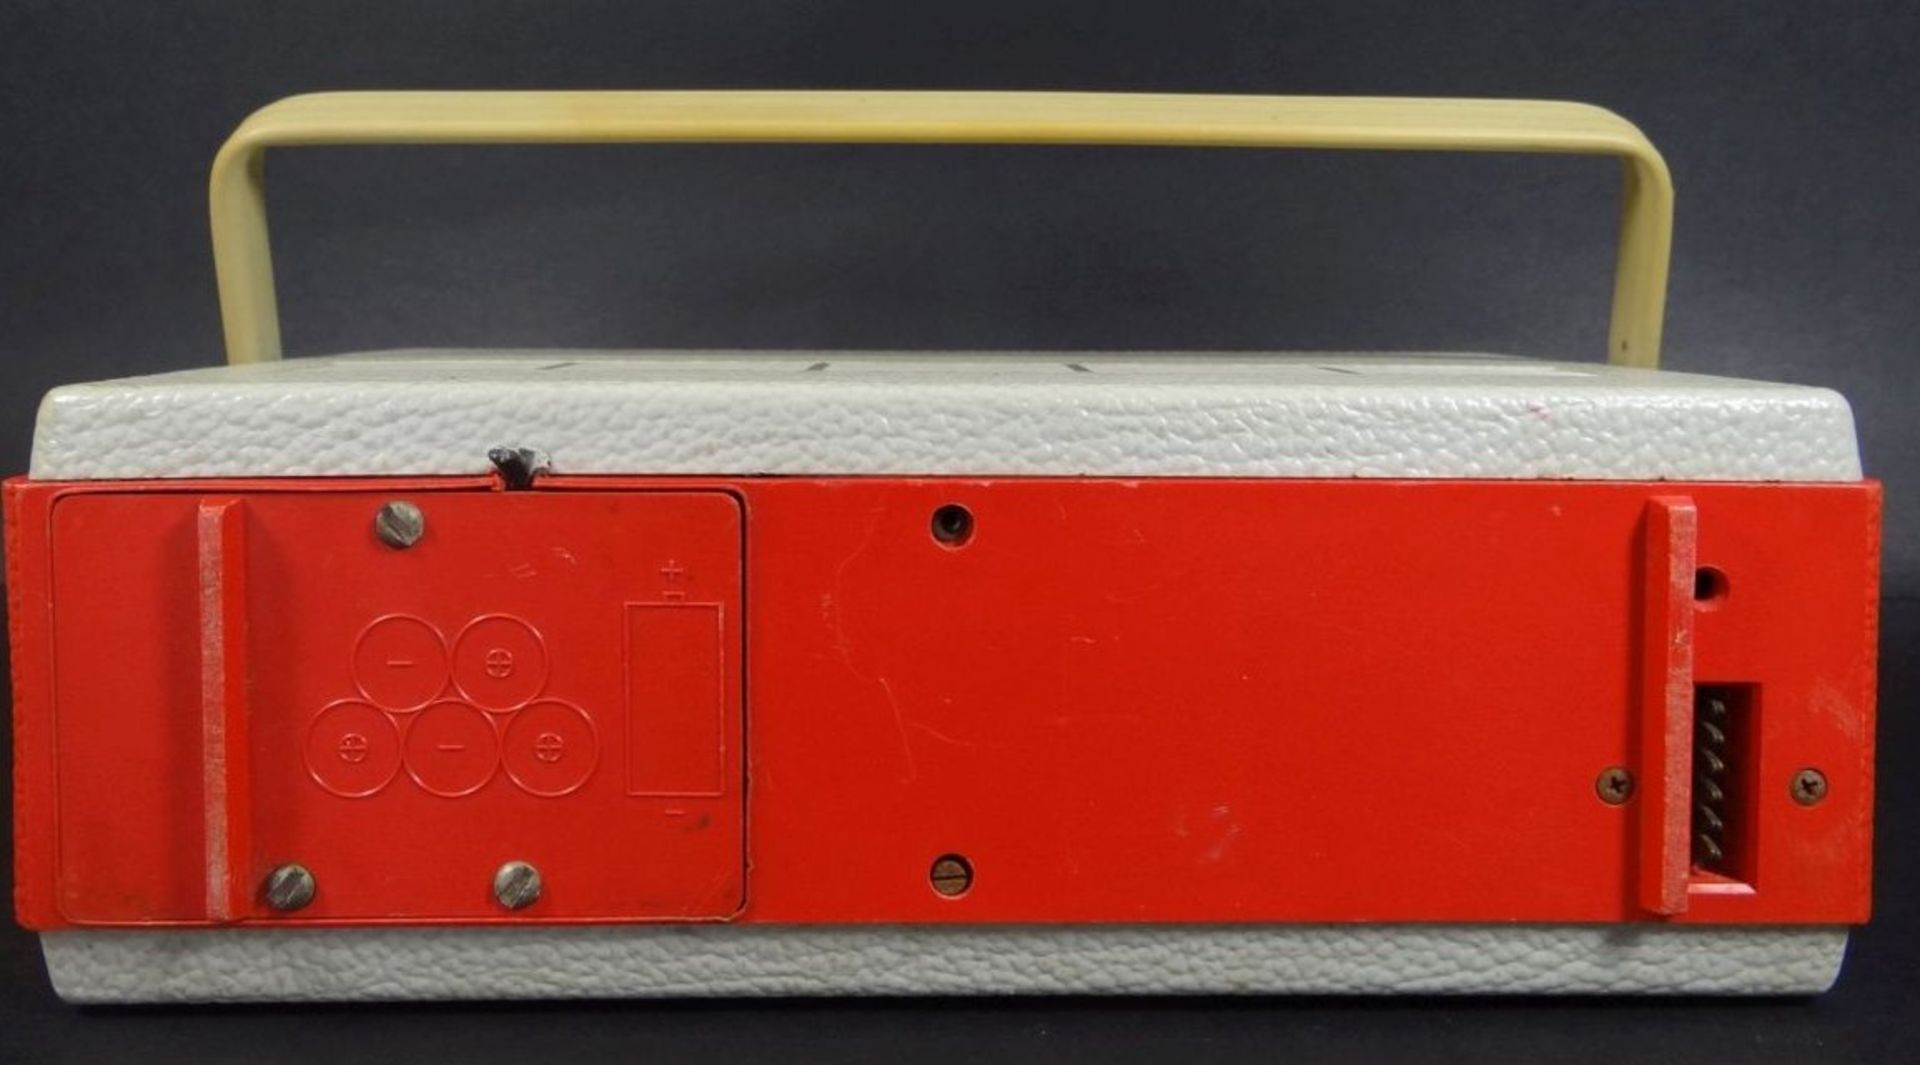 gr. Transistor-Radio "Imperial Capri" um 1960, Funktion nicht geprüft, H-19 cm, B-28 c - Bild 3 aus 6